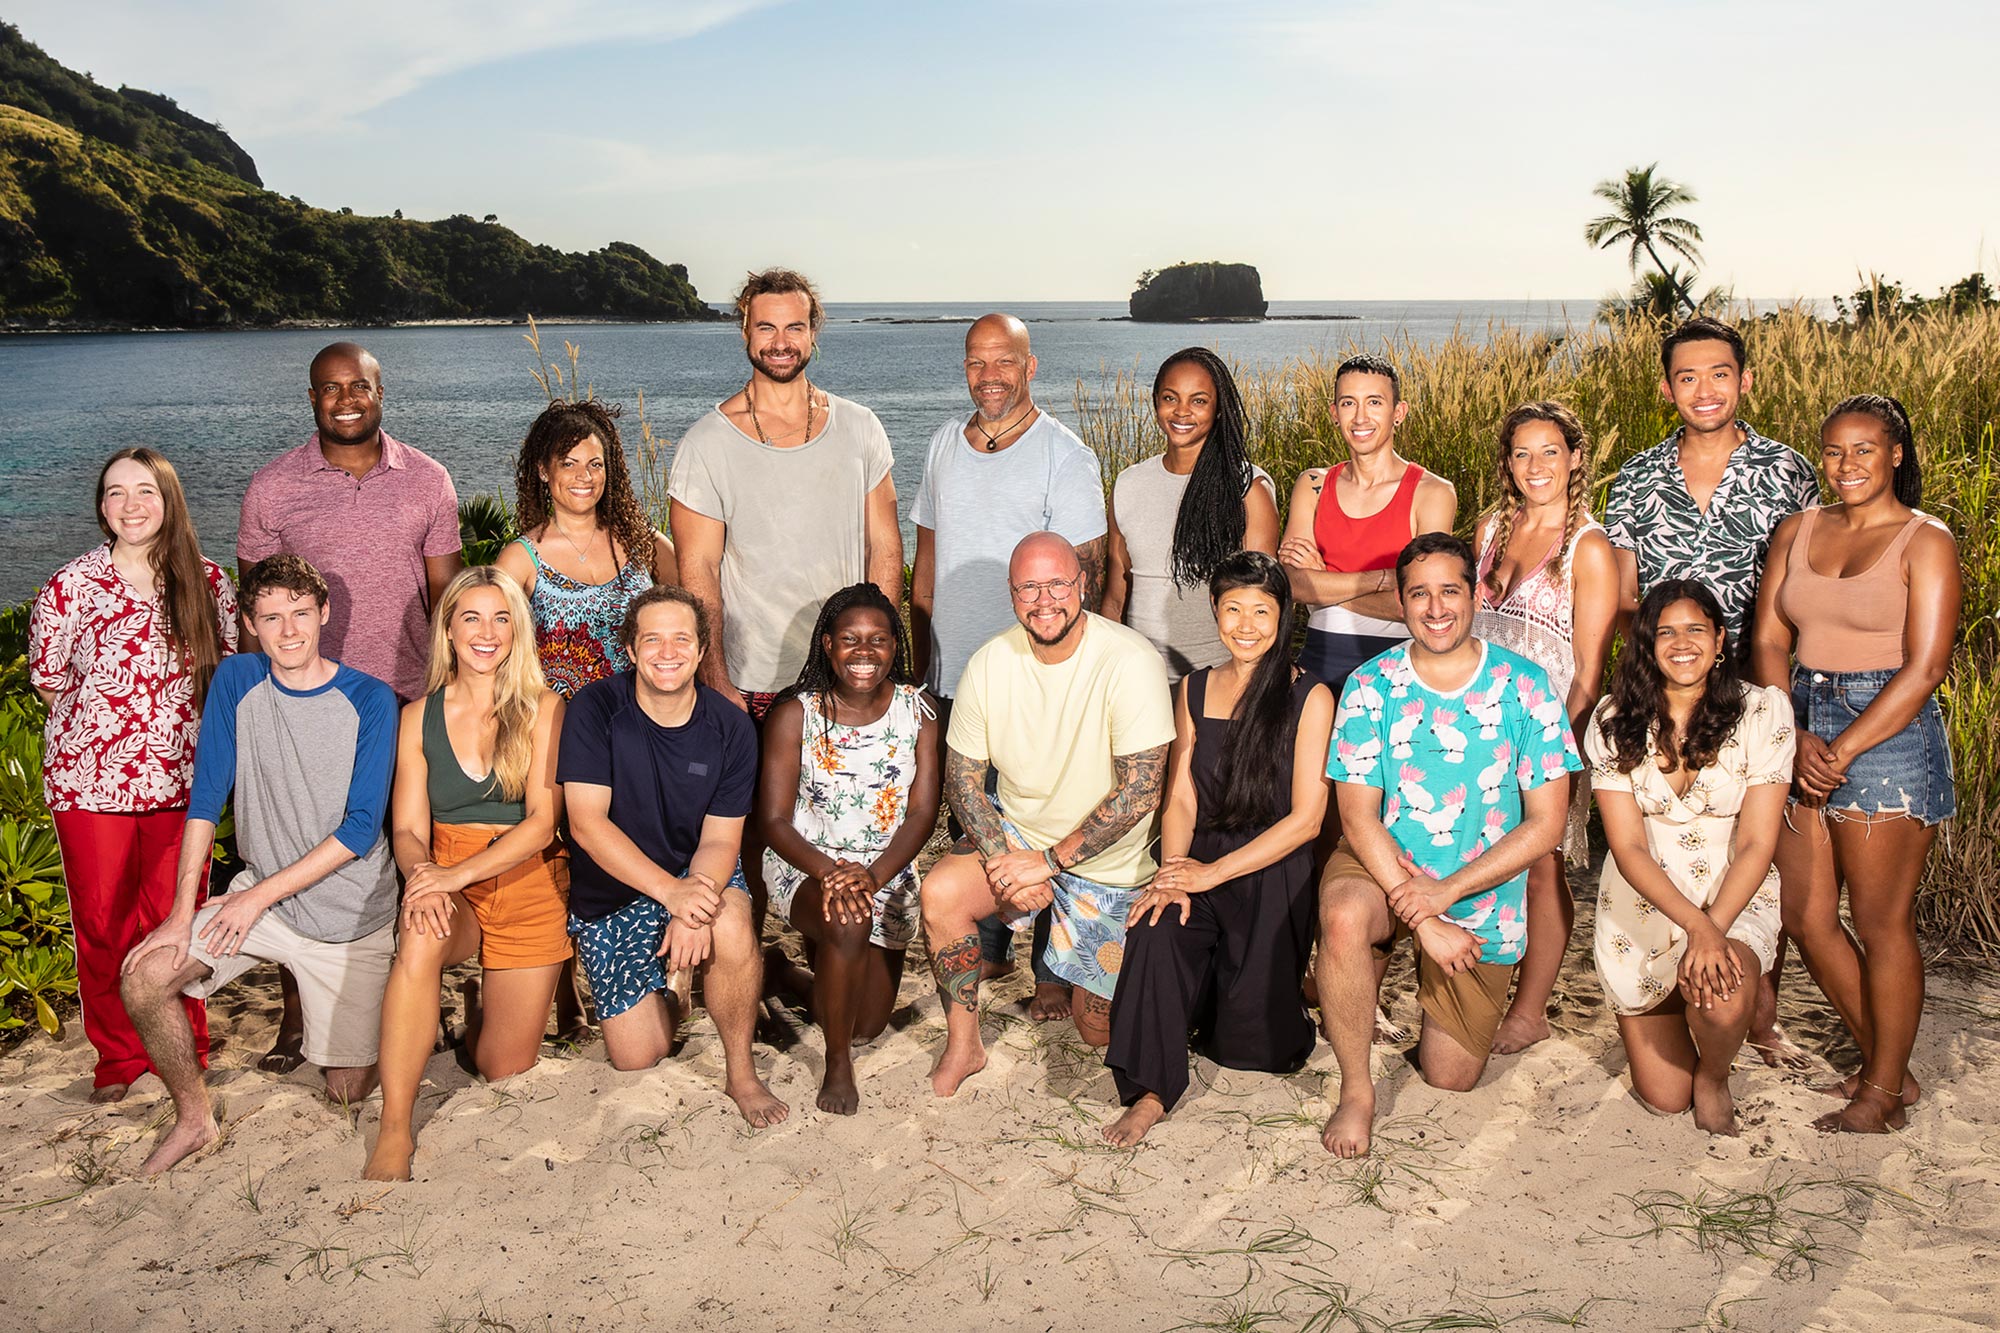 The cast of Survivor 42